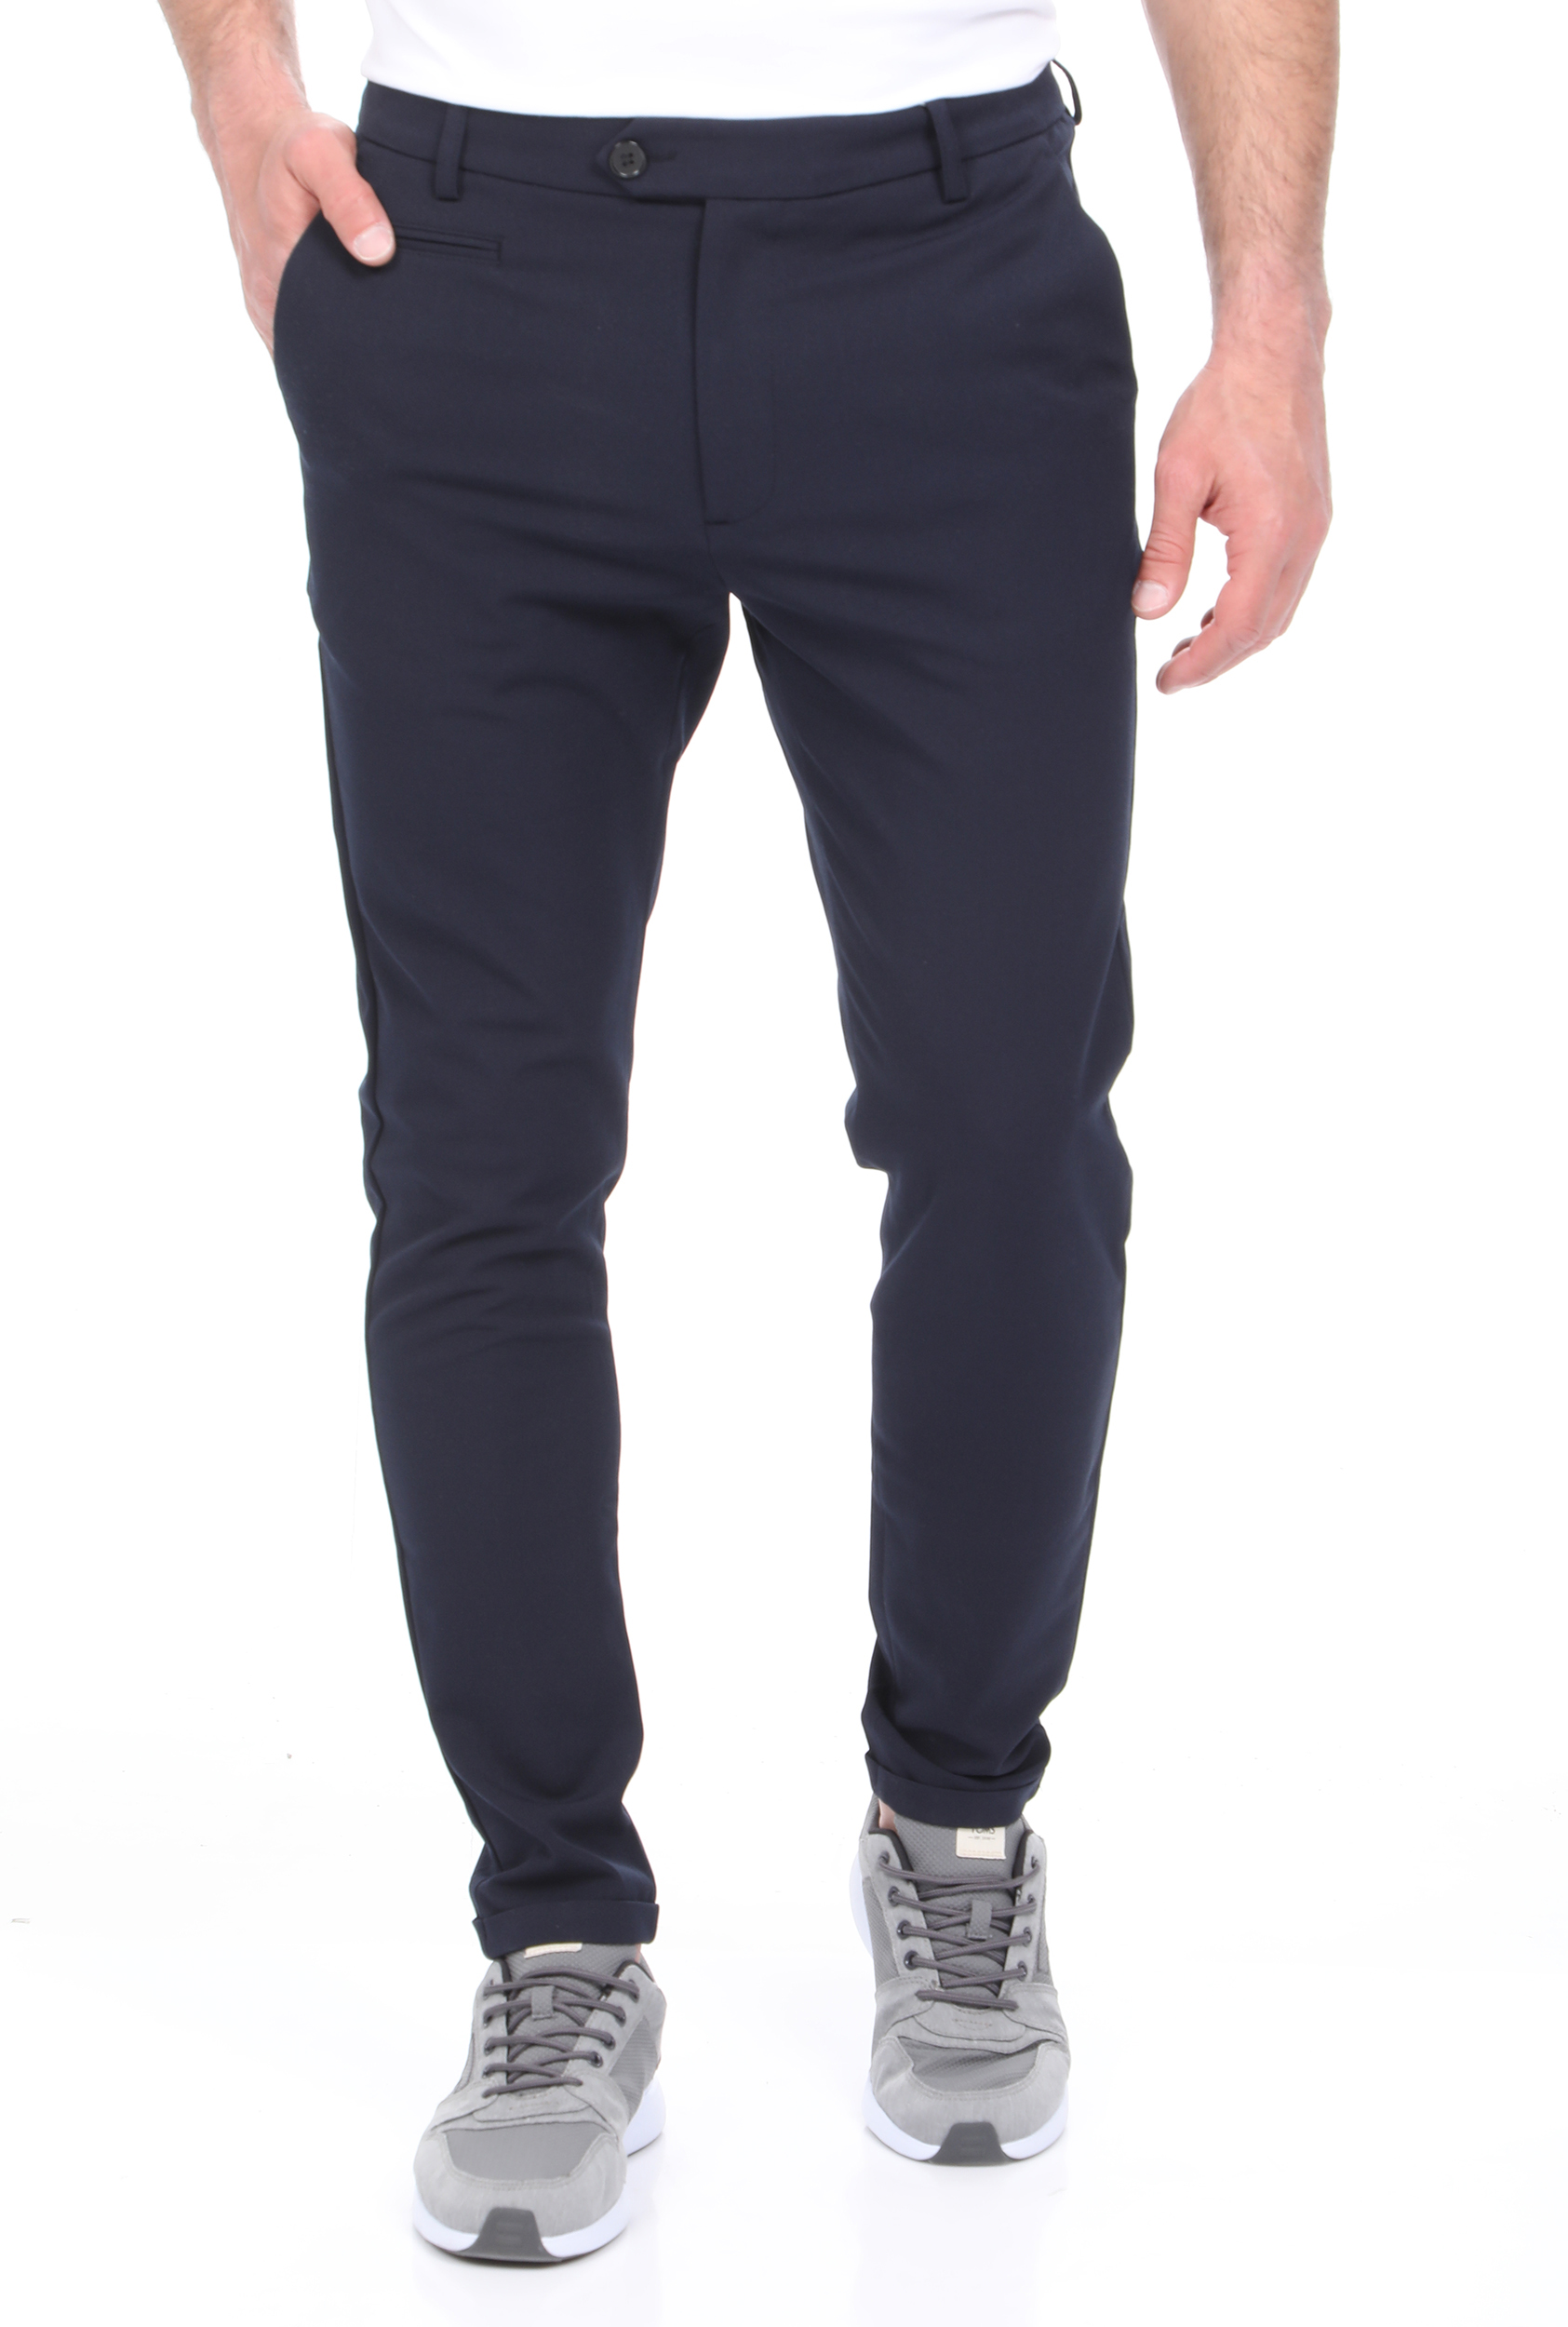 Ανδρικά/Ρούχα/Παντελόνια/Ισια Γραμμή LES DEUX - Ανδρικό παντελόνι κοστουμιού LES DEUX Como LIGHT Suit Pants μπλε